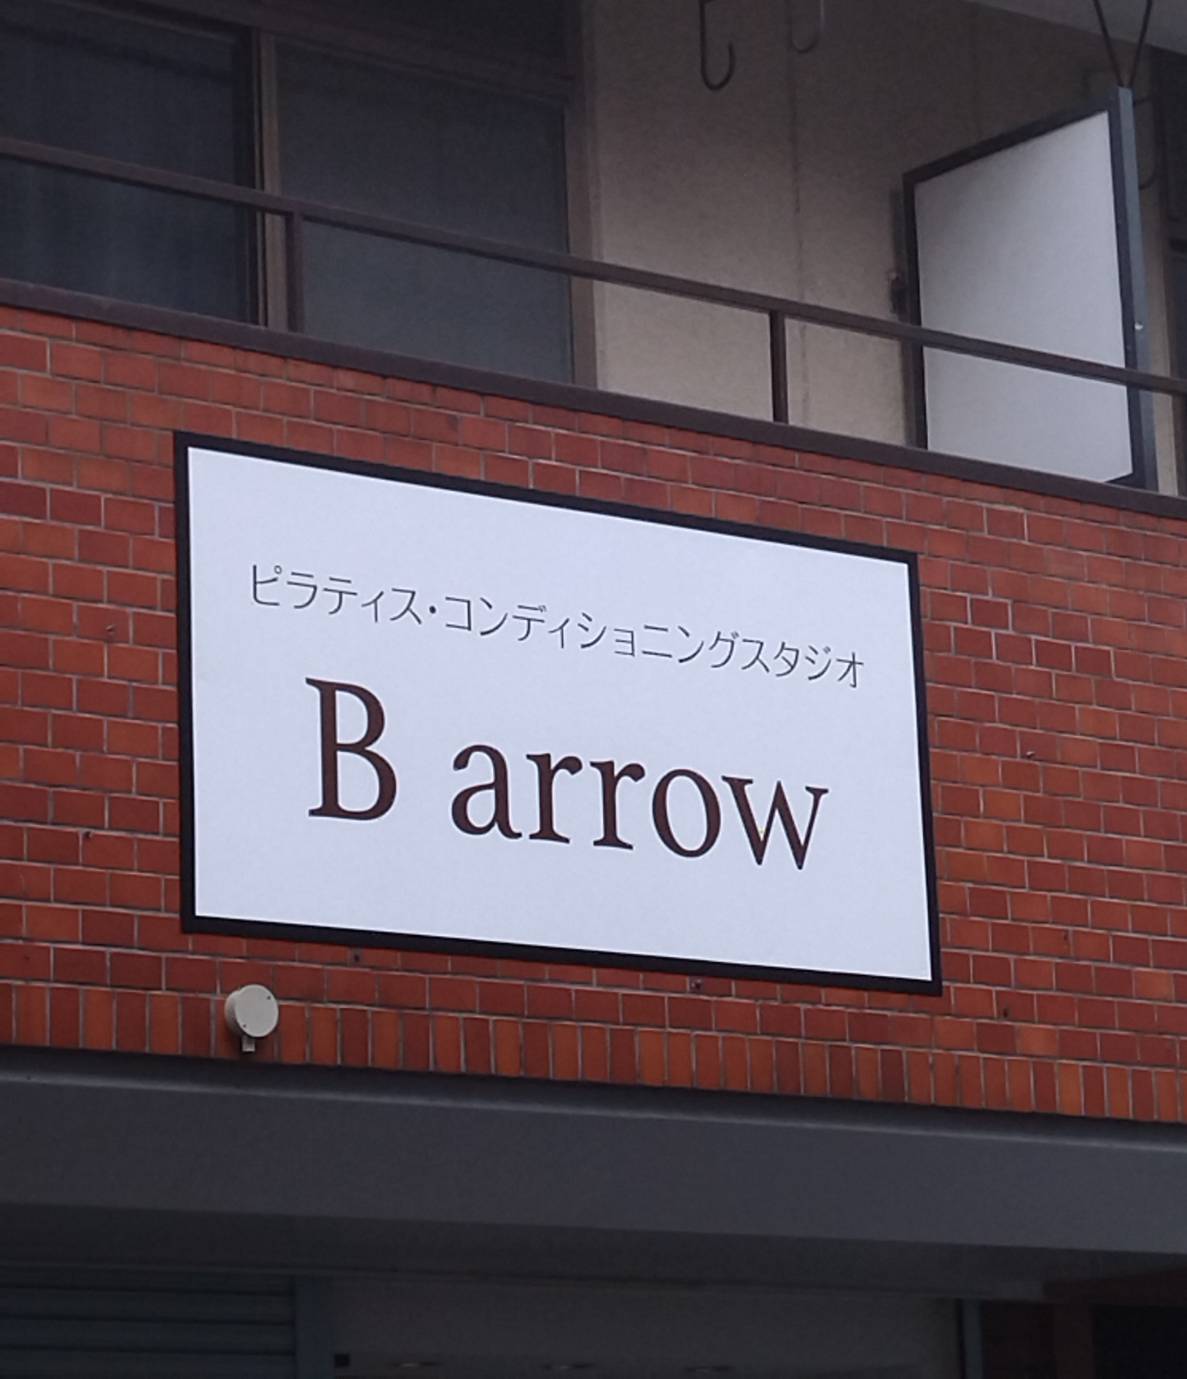 ピラティス・コンディショニングスタジオB arrow